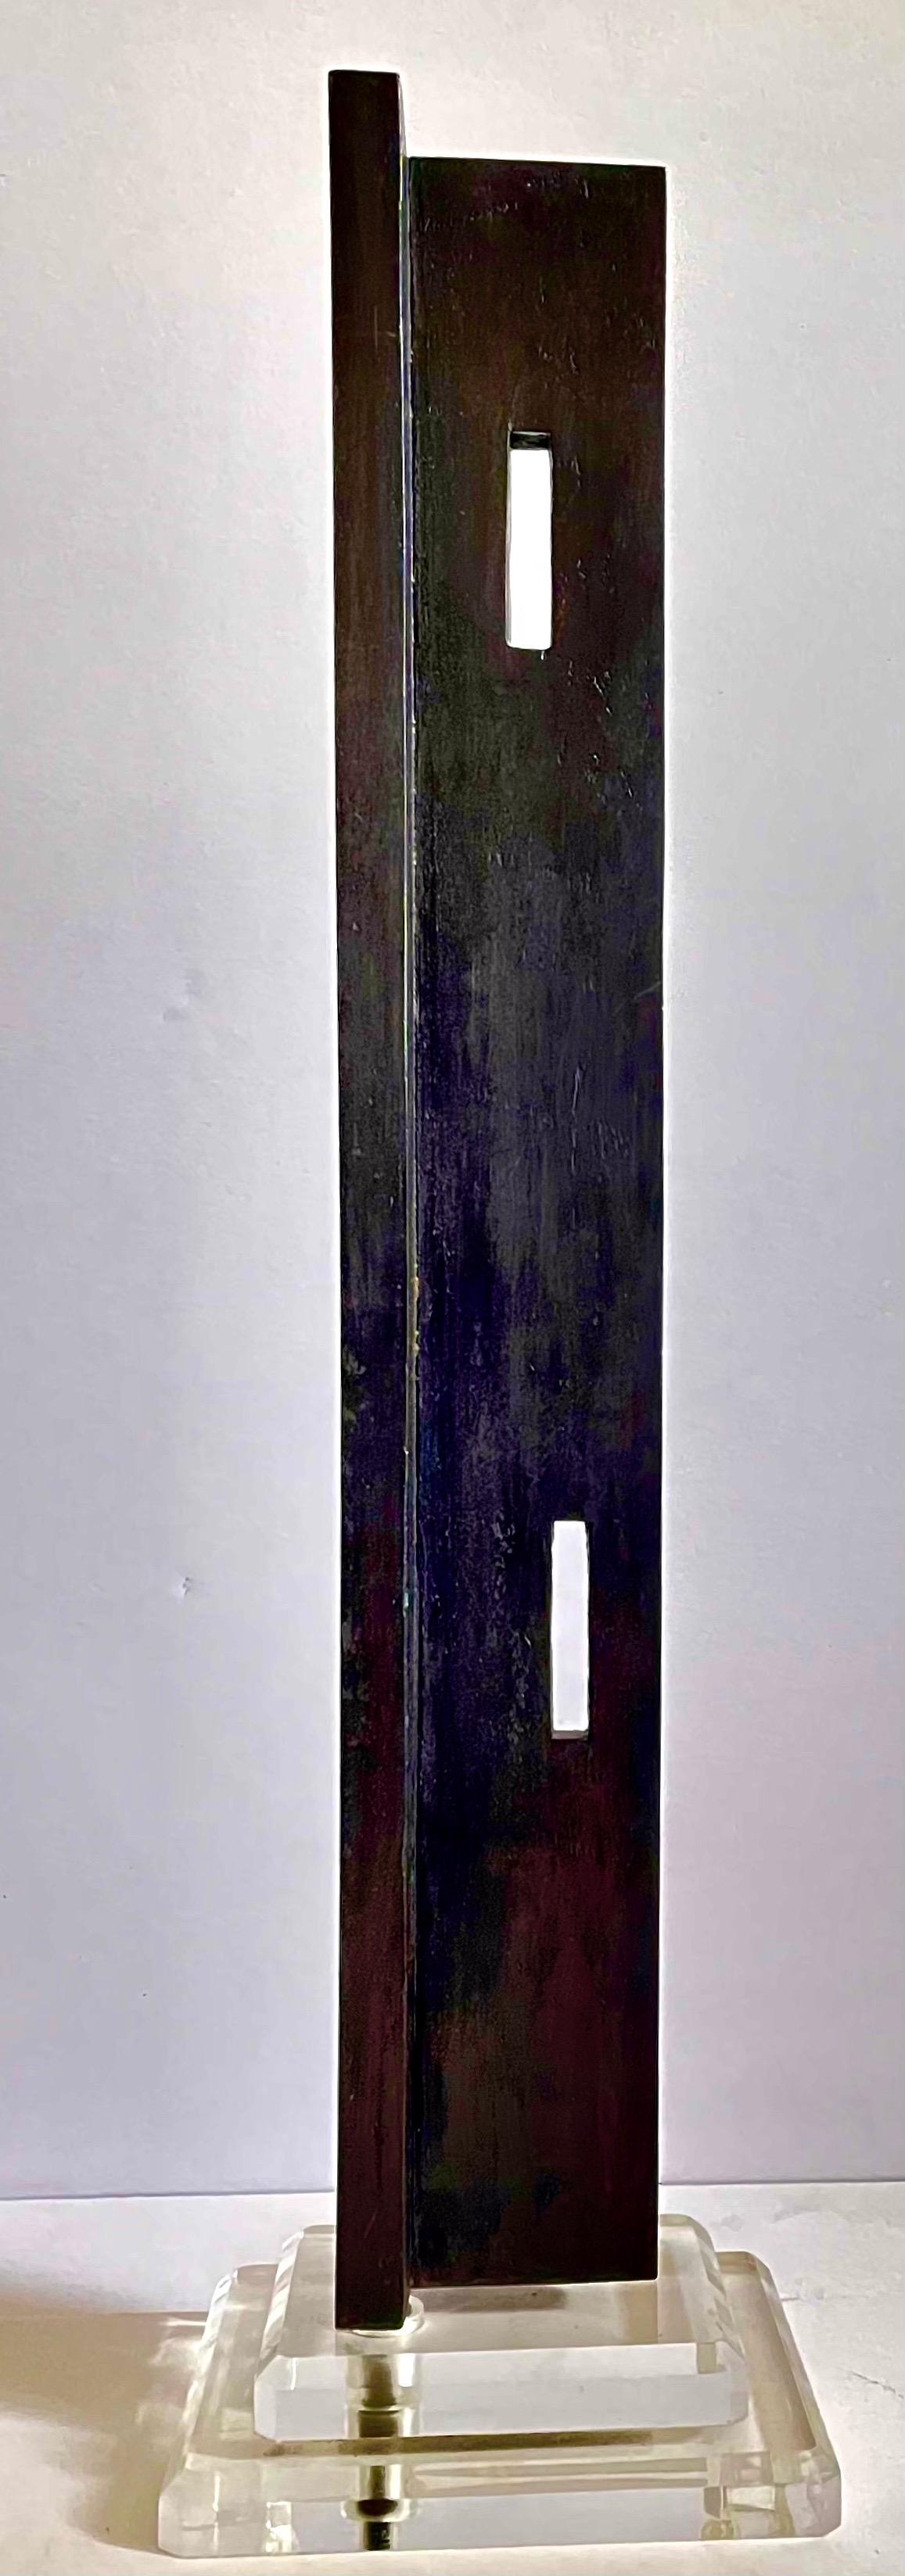 Alan Johnston (écossais, né en 1945), 
Sans titre, 1988, bronze coulé, édition de 2, coulée #2 
Incisé A.J. 2/2 88 sur le dessous de l'appareil
Provenance : Galerie Jack Tilton, NY
Il s'agit d'une sculpture en bronze massif, lourde, montée sur une